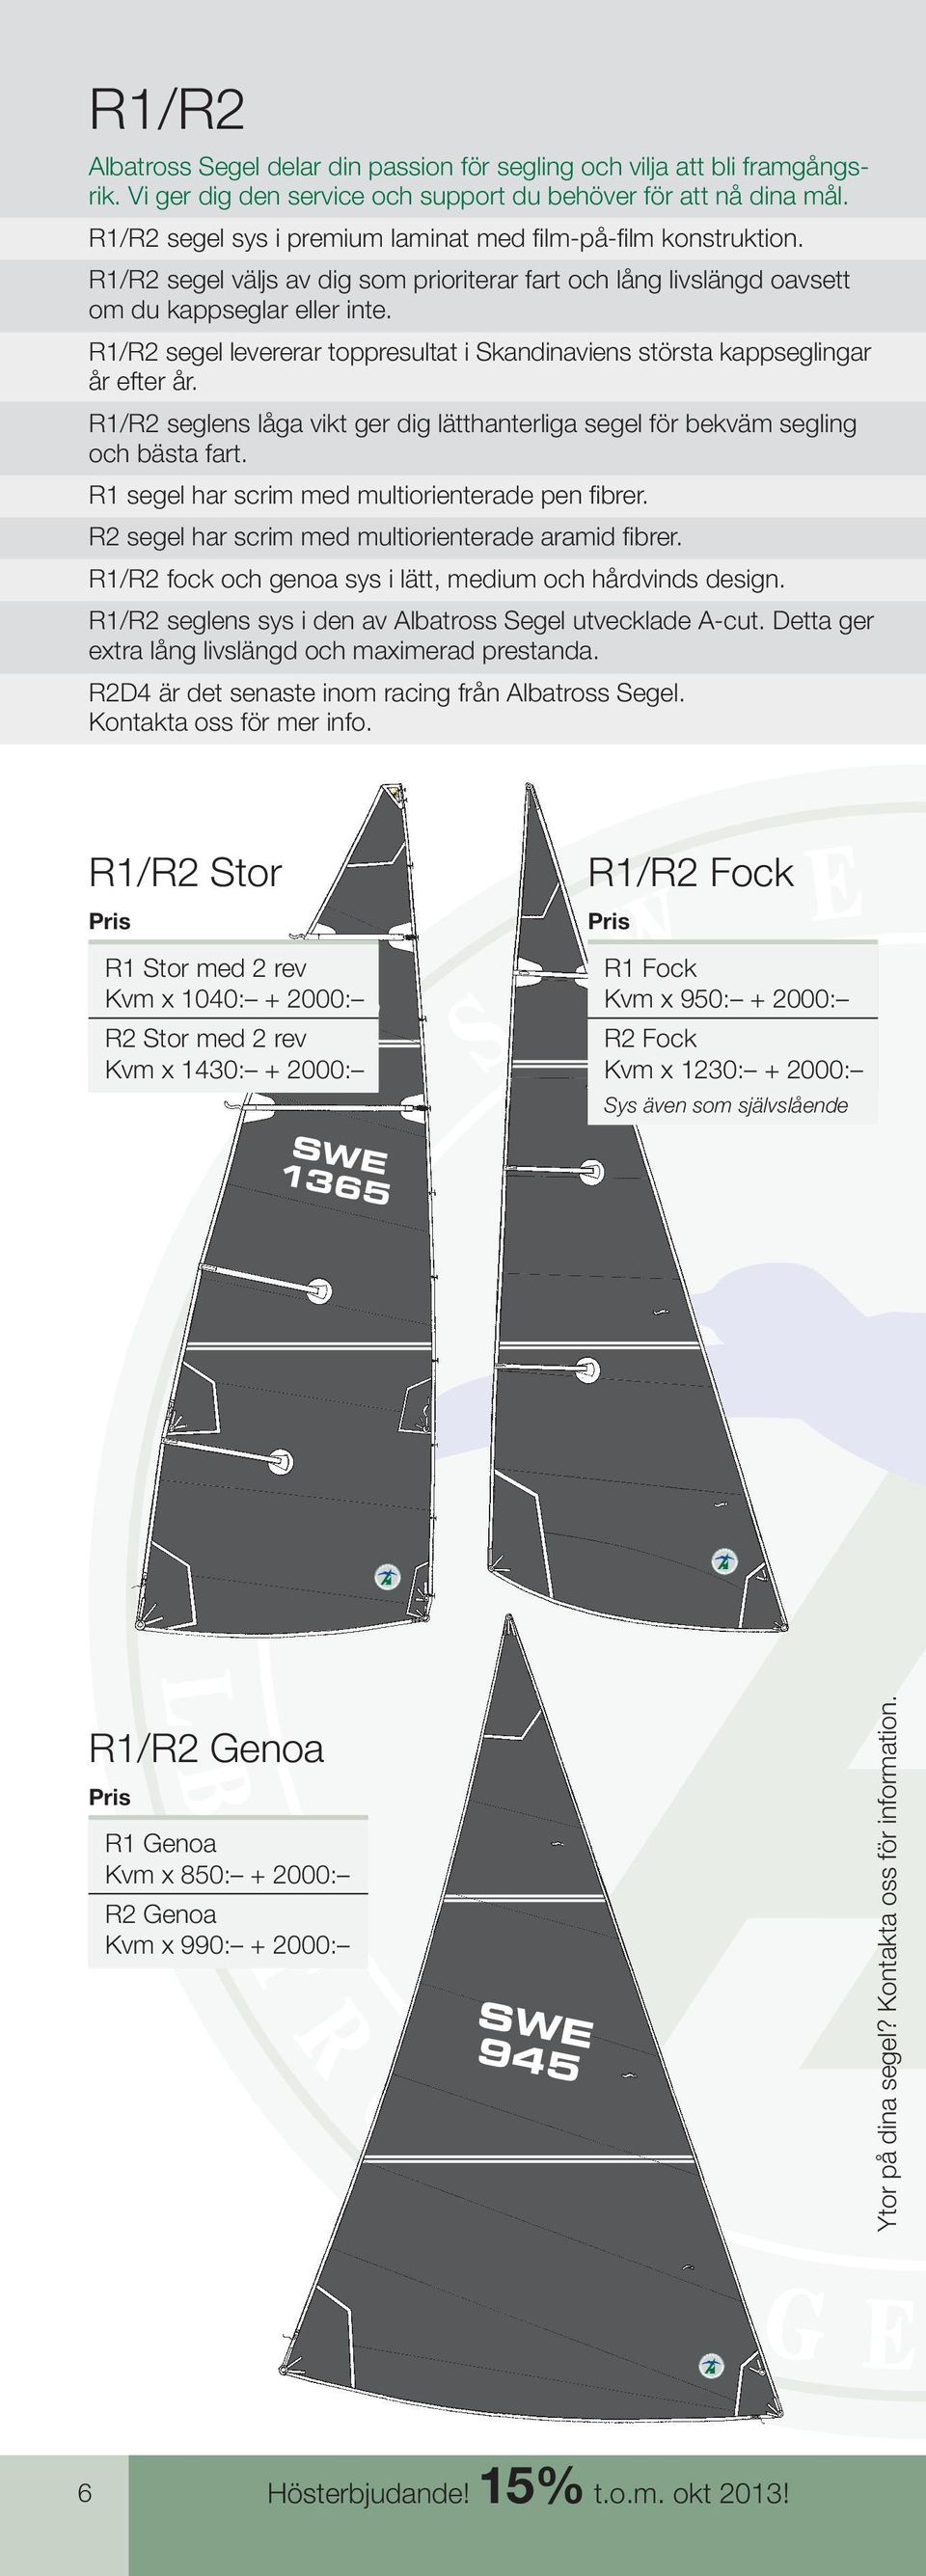 R/R2 segel levererar toppresultat i kandinaviens största kappseglingar år efter år. R/R2 seglens låga vikt ger dig lätthanterliga segel för bekväm segling och bästa fart.